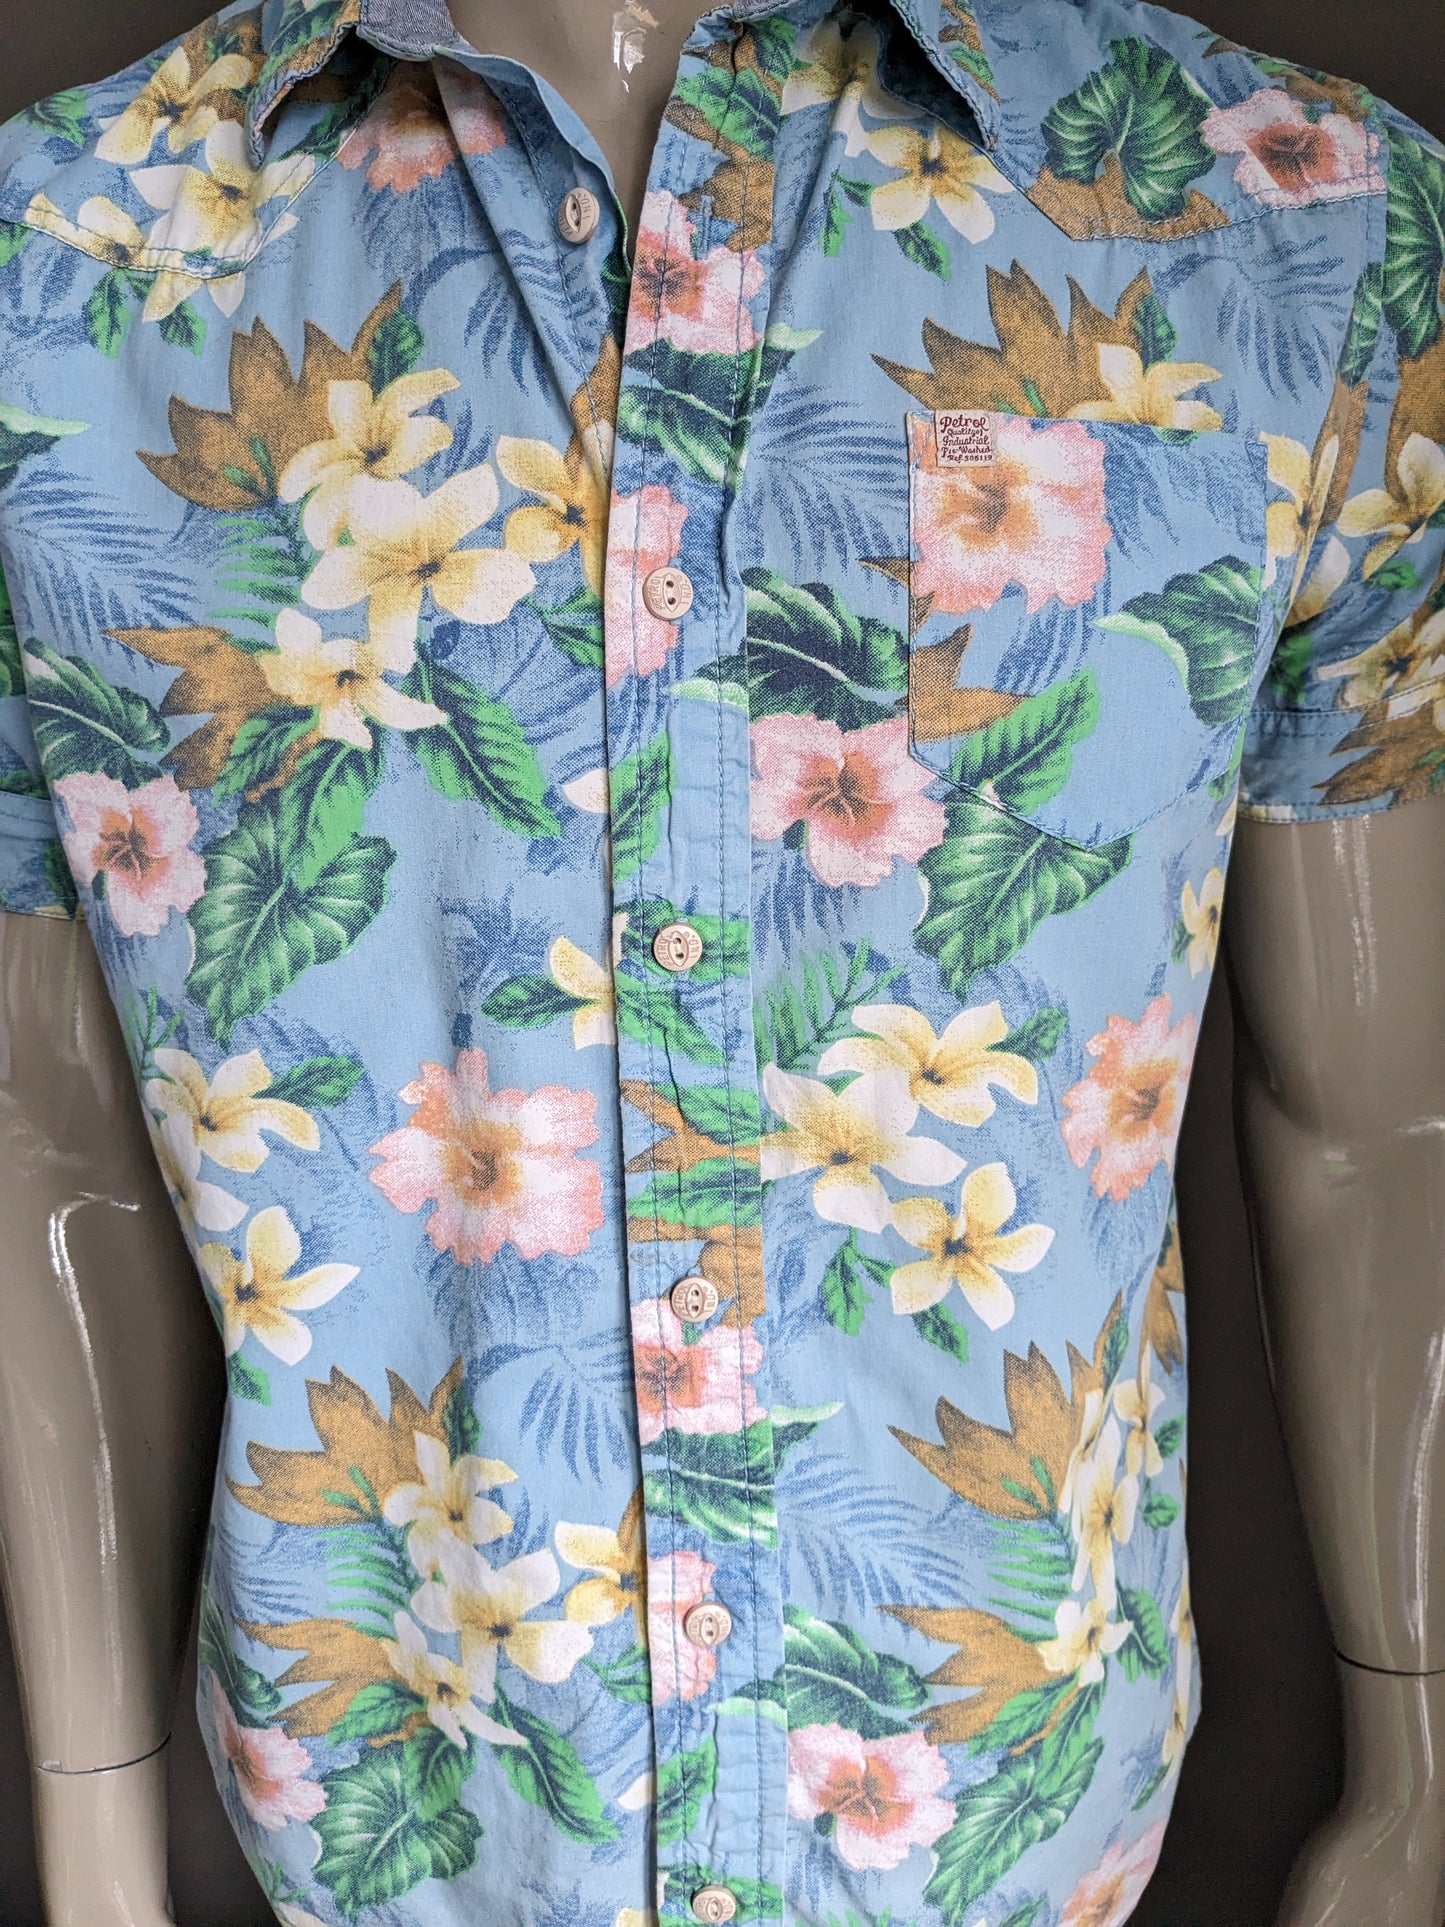 Sleeve corta della camicia delle Hawaii a benzina. Stampa floreale rosa giallo verde blu. Taglia L.